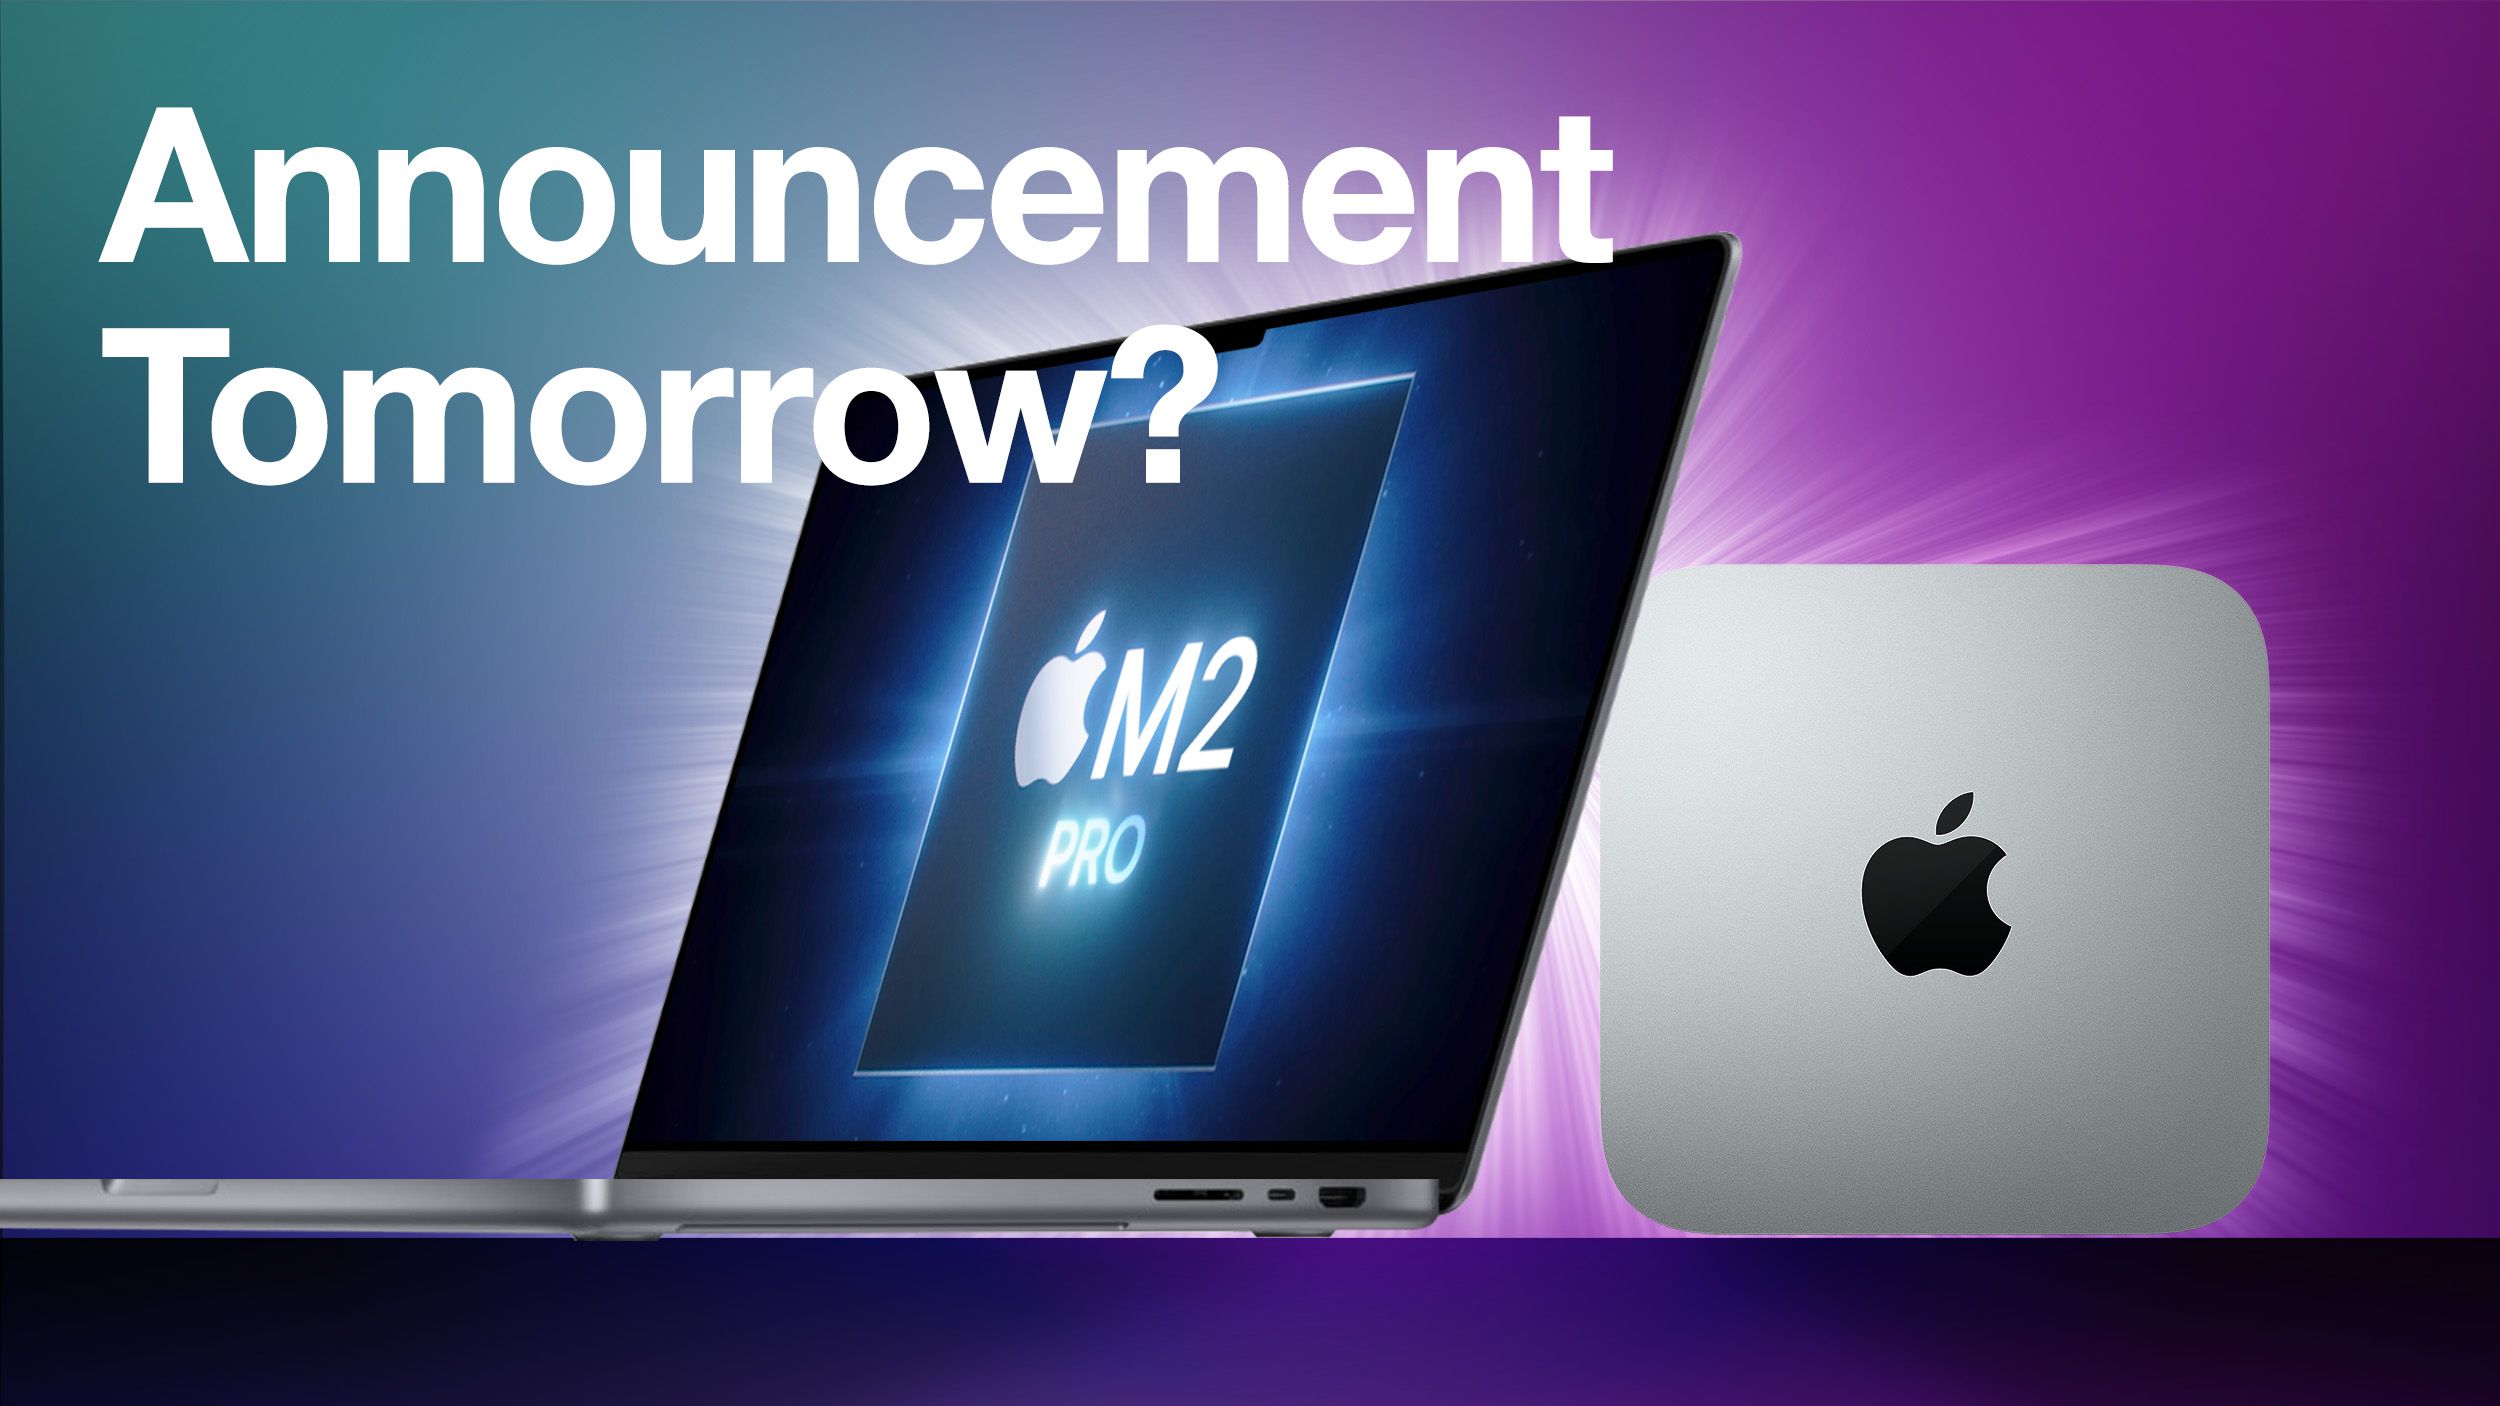 Si dice che Apple annuncerà il suo prodotto domani